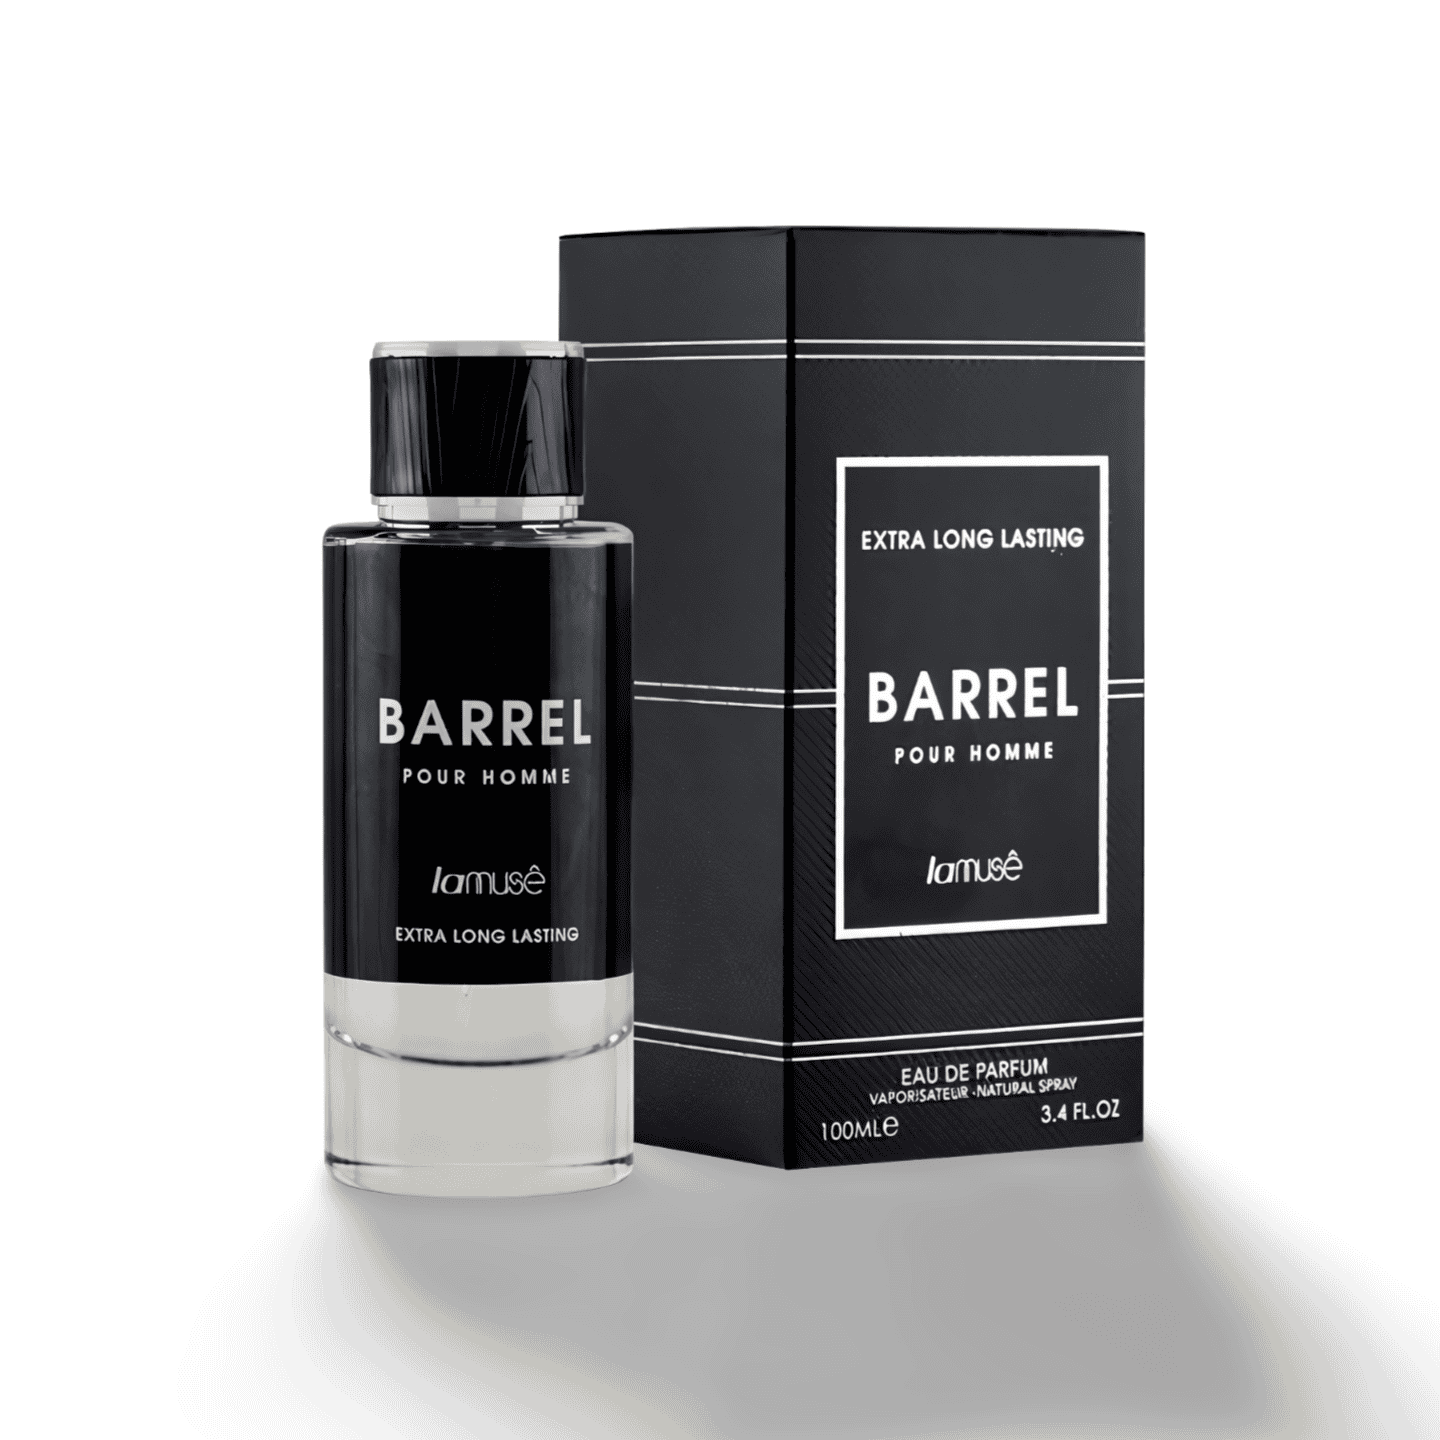 Barrel Pour Homme Perfume